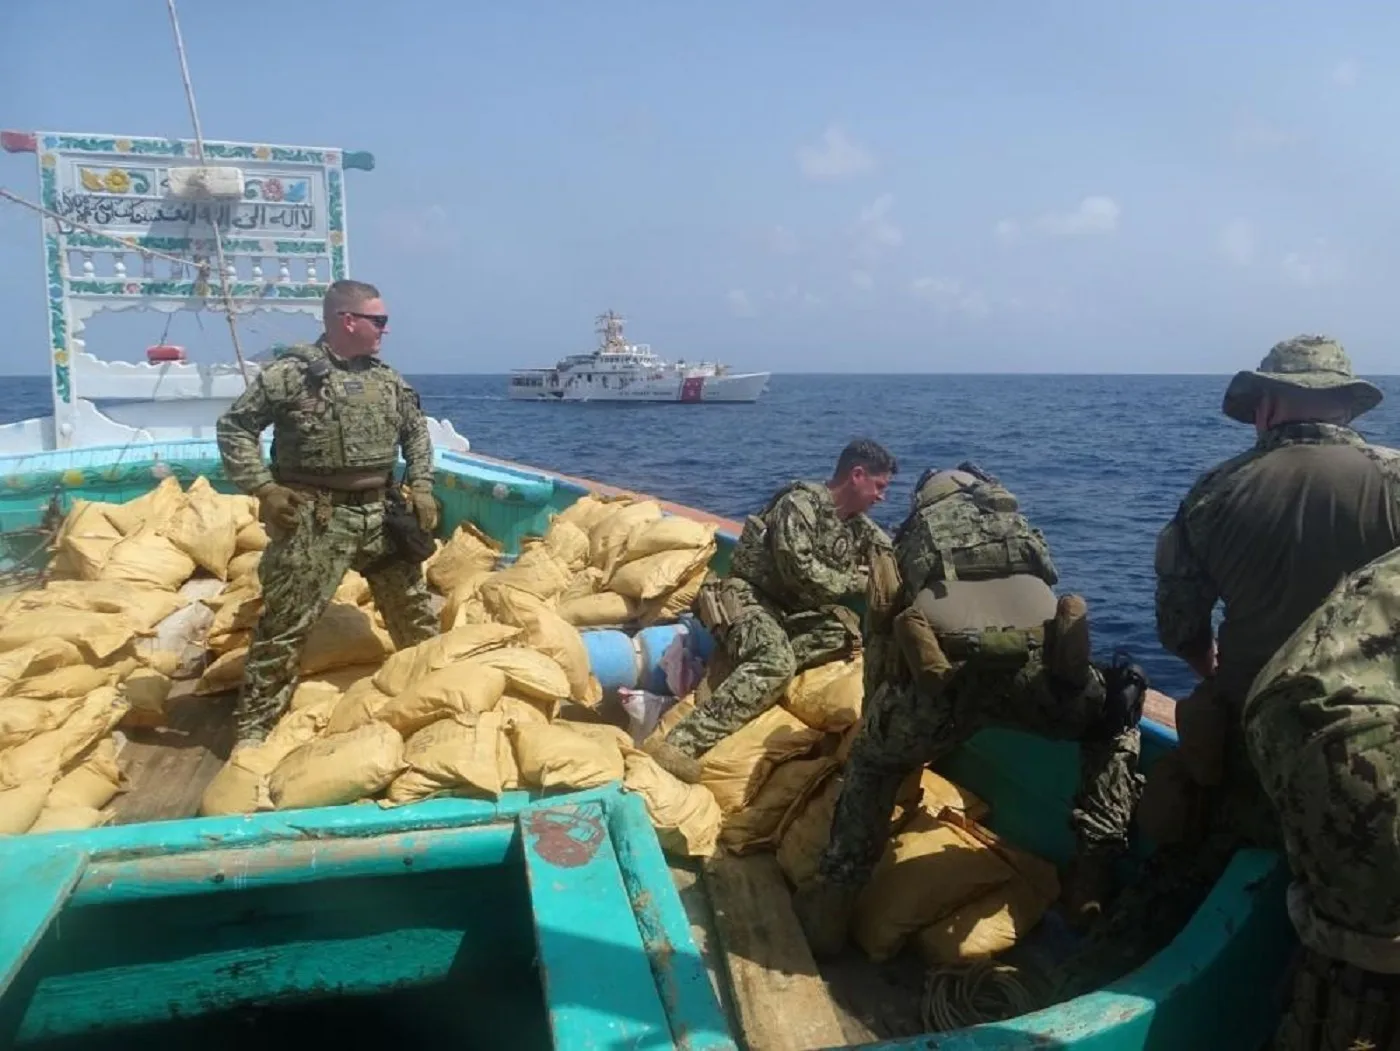 الجيش الأمريكي يعلن مصادر سفينة "هيروين" في بحر عُمان